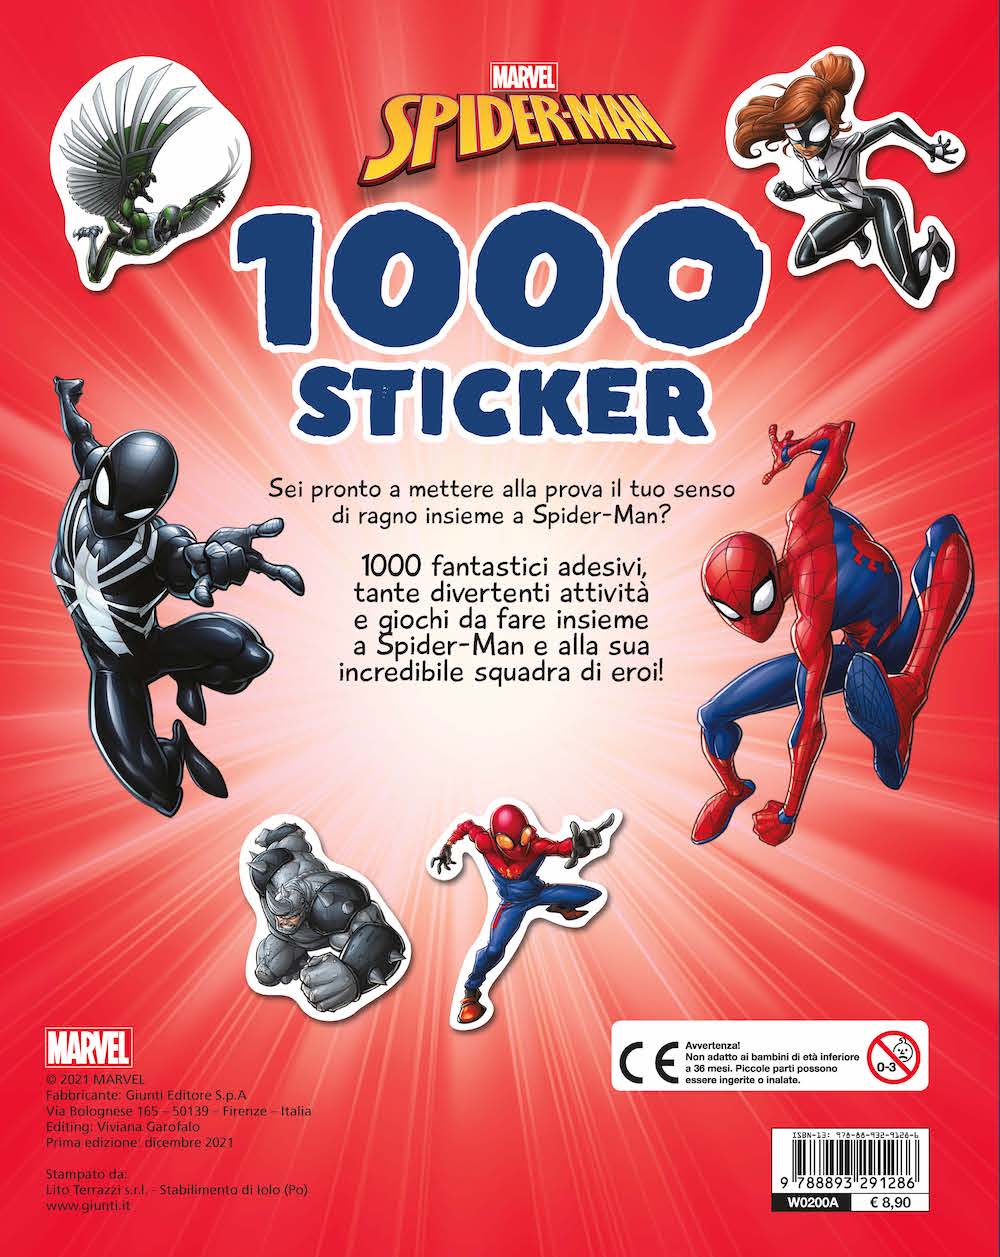 Spiderman 1000 sticker. Tanti giochi e attività